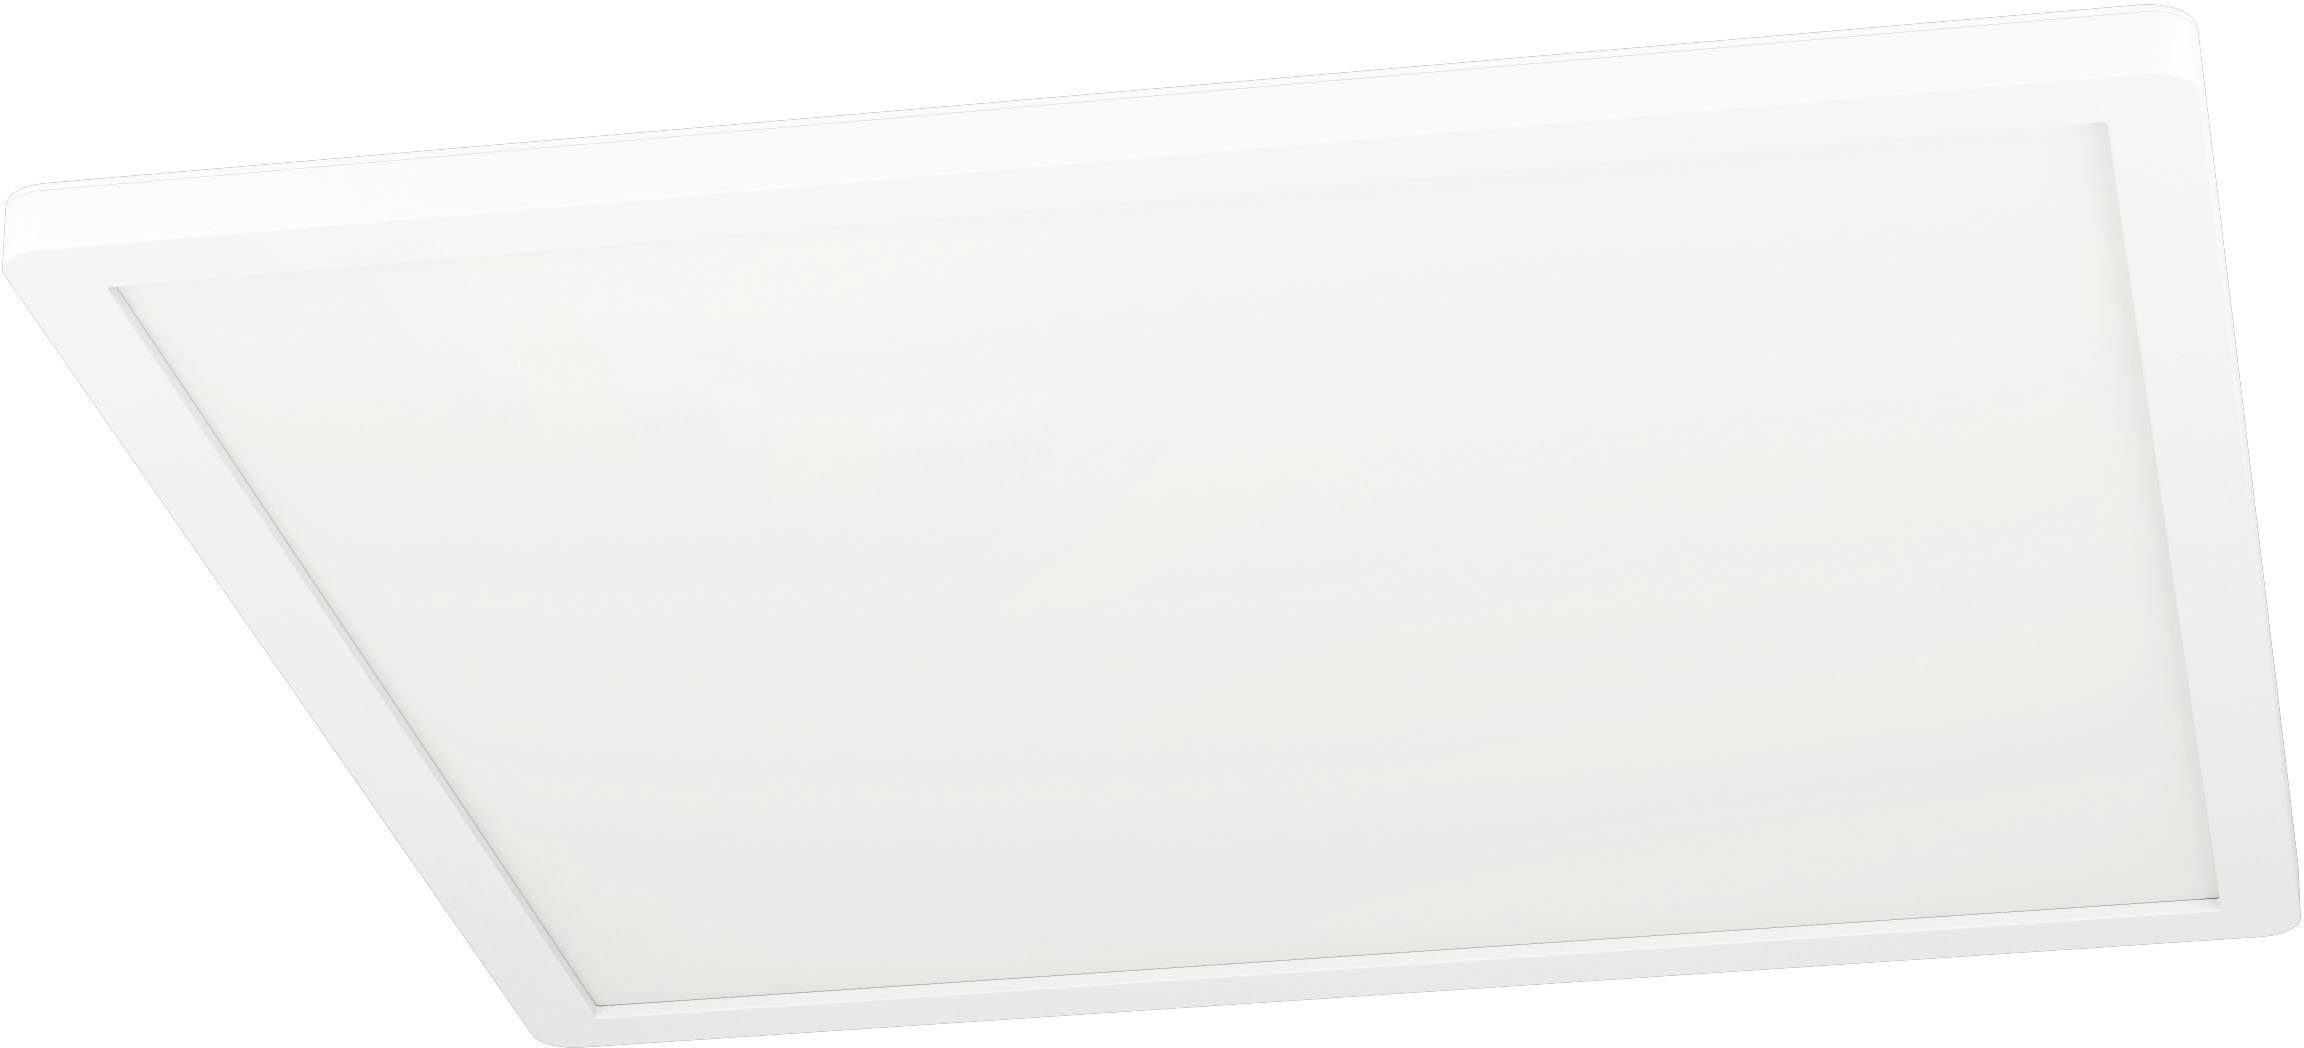 EGLO Deckenleuchte ROVITO-Z, LED fest integriert, warmweiß - kaltweiß,  Deckenleuchte in weiß aus Kunststoff - 16,5W - warmweiß - kaltweiß,  Deckenleuchte ROVITO-Z überzeugt durch Qualität und Langlebigkeit | Deckenlampen